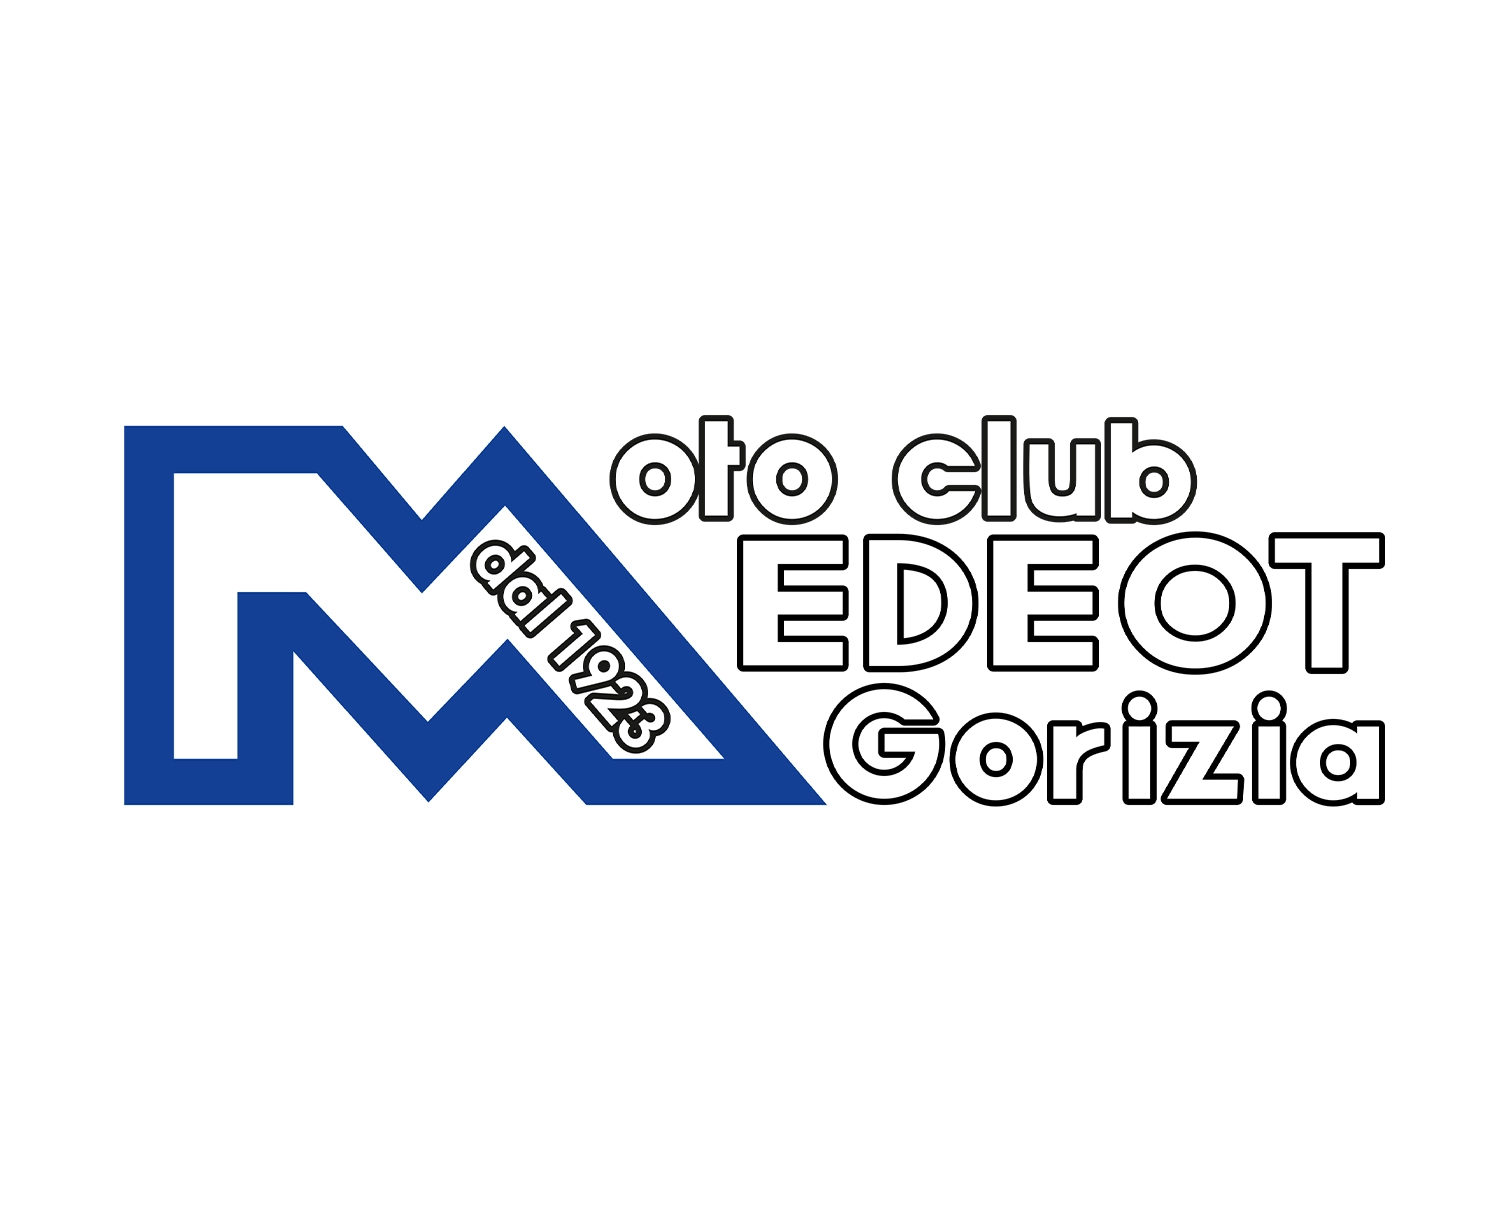 Moto Club Medeot